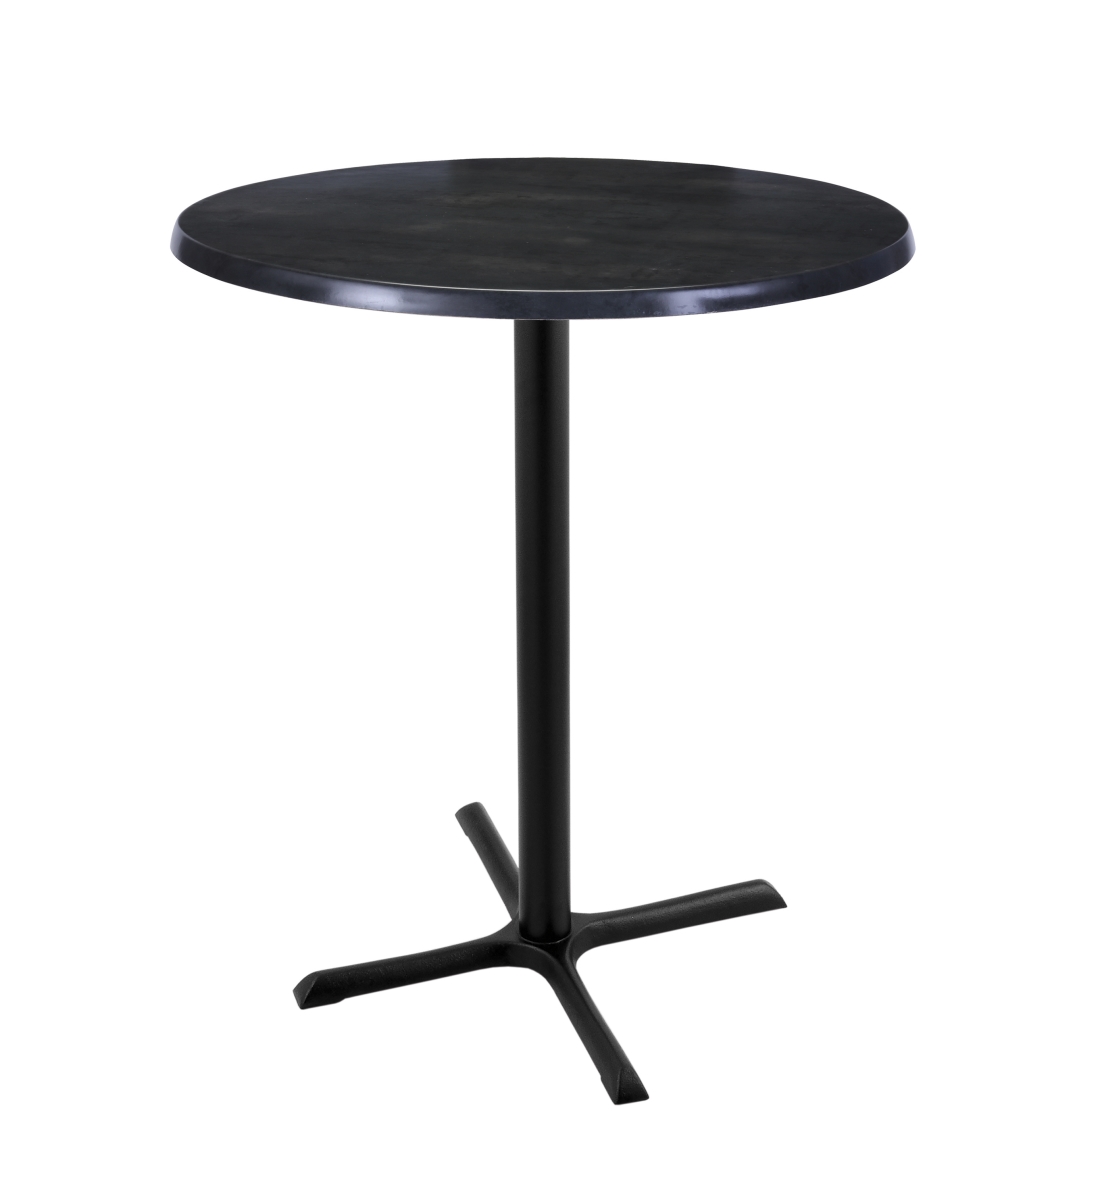 42 In. Black Table With 30 In. Diameter Indoor & Outdoor Black Steel Round Top